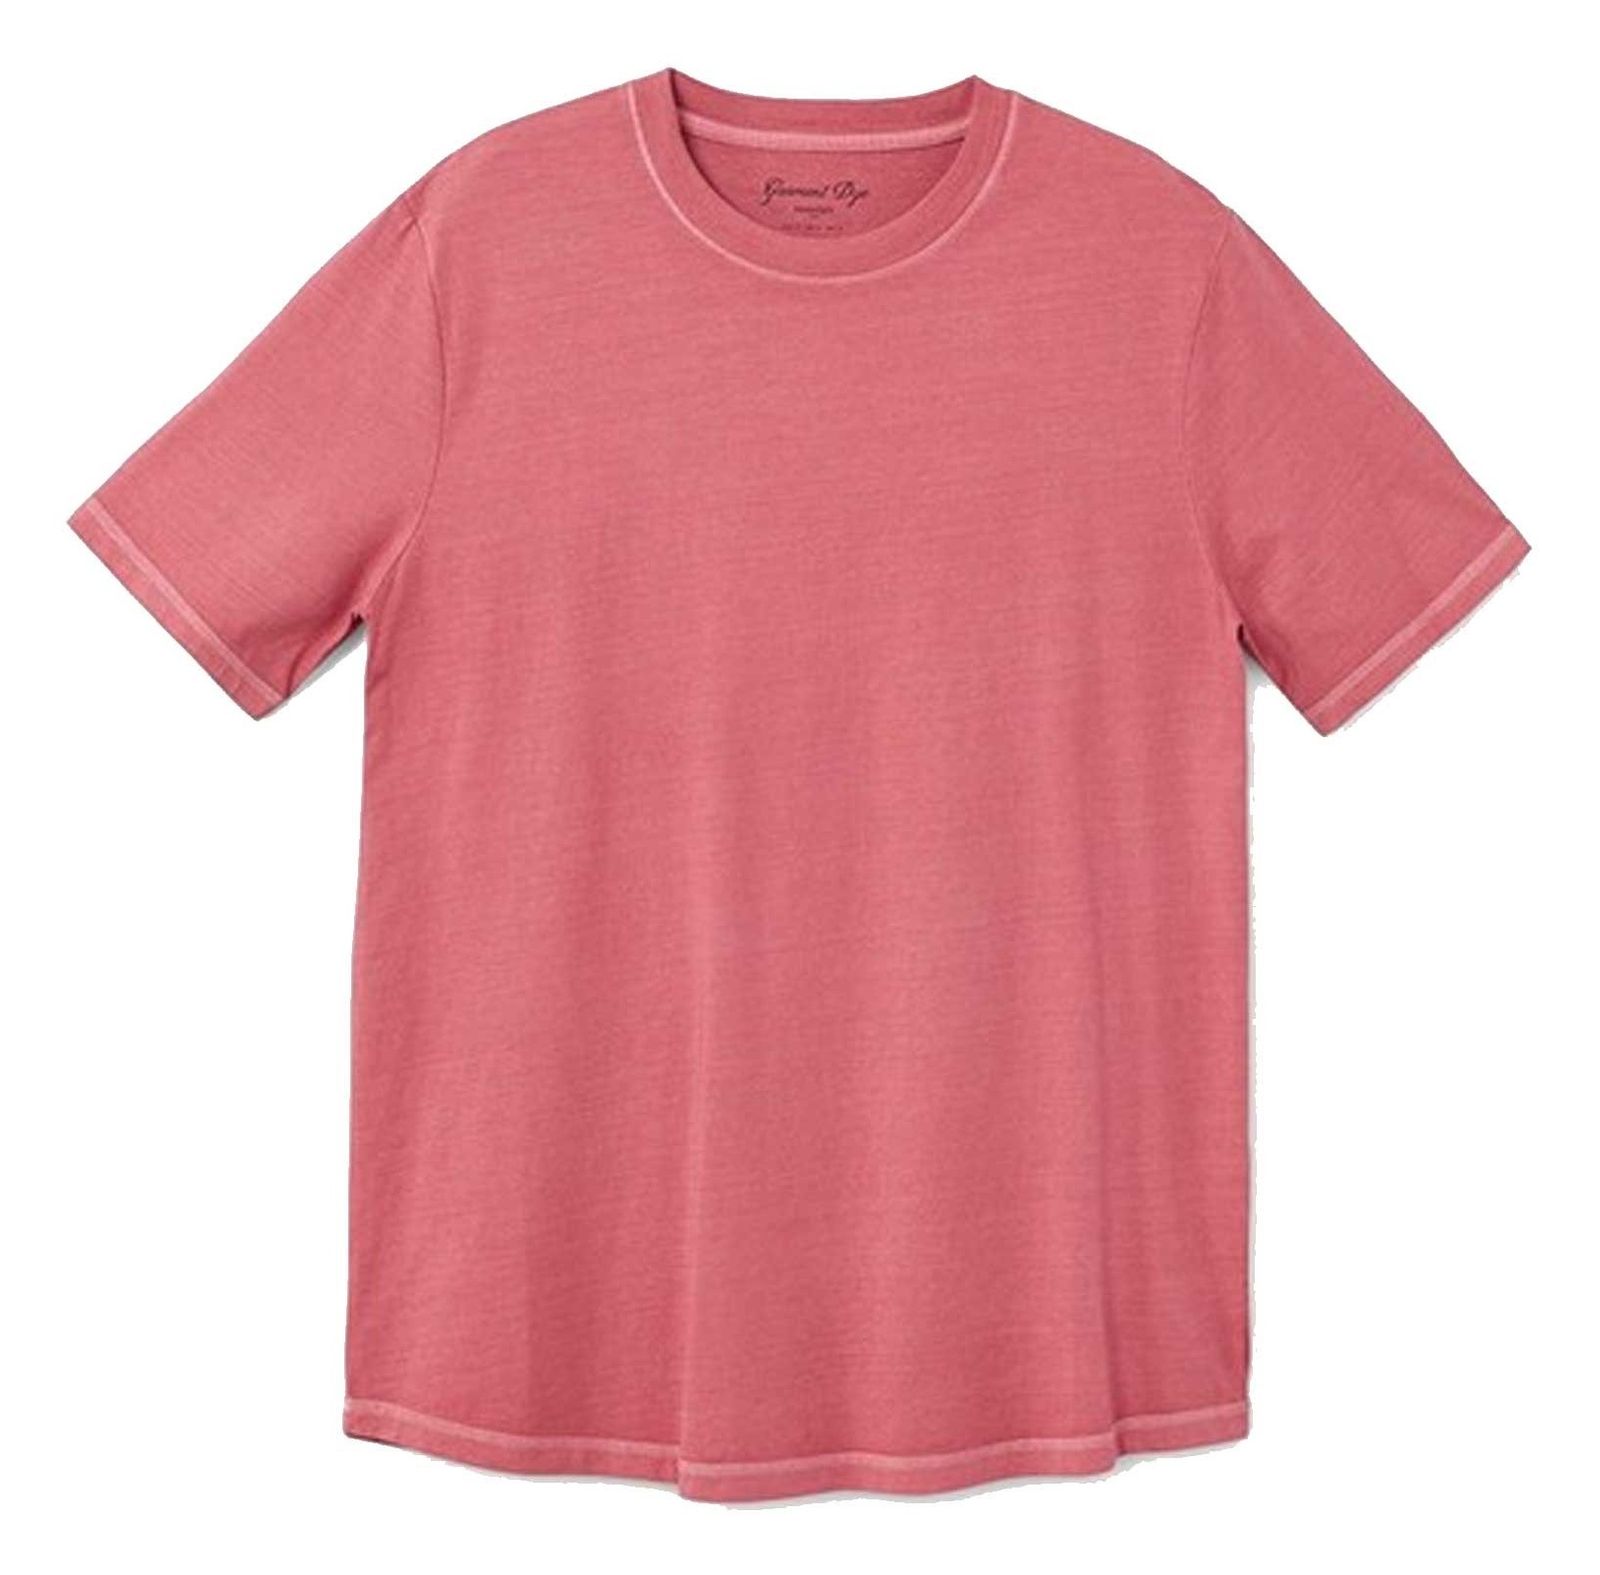 تی شرت نخی یقه گرد مردانه - مانگو - قرمز  - 2